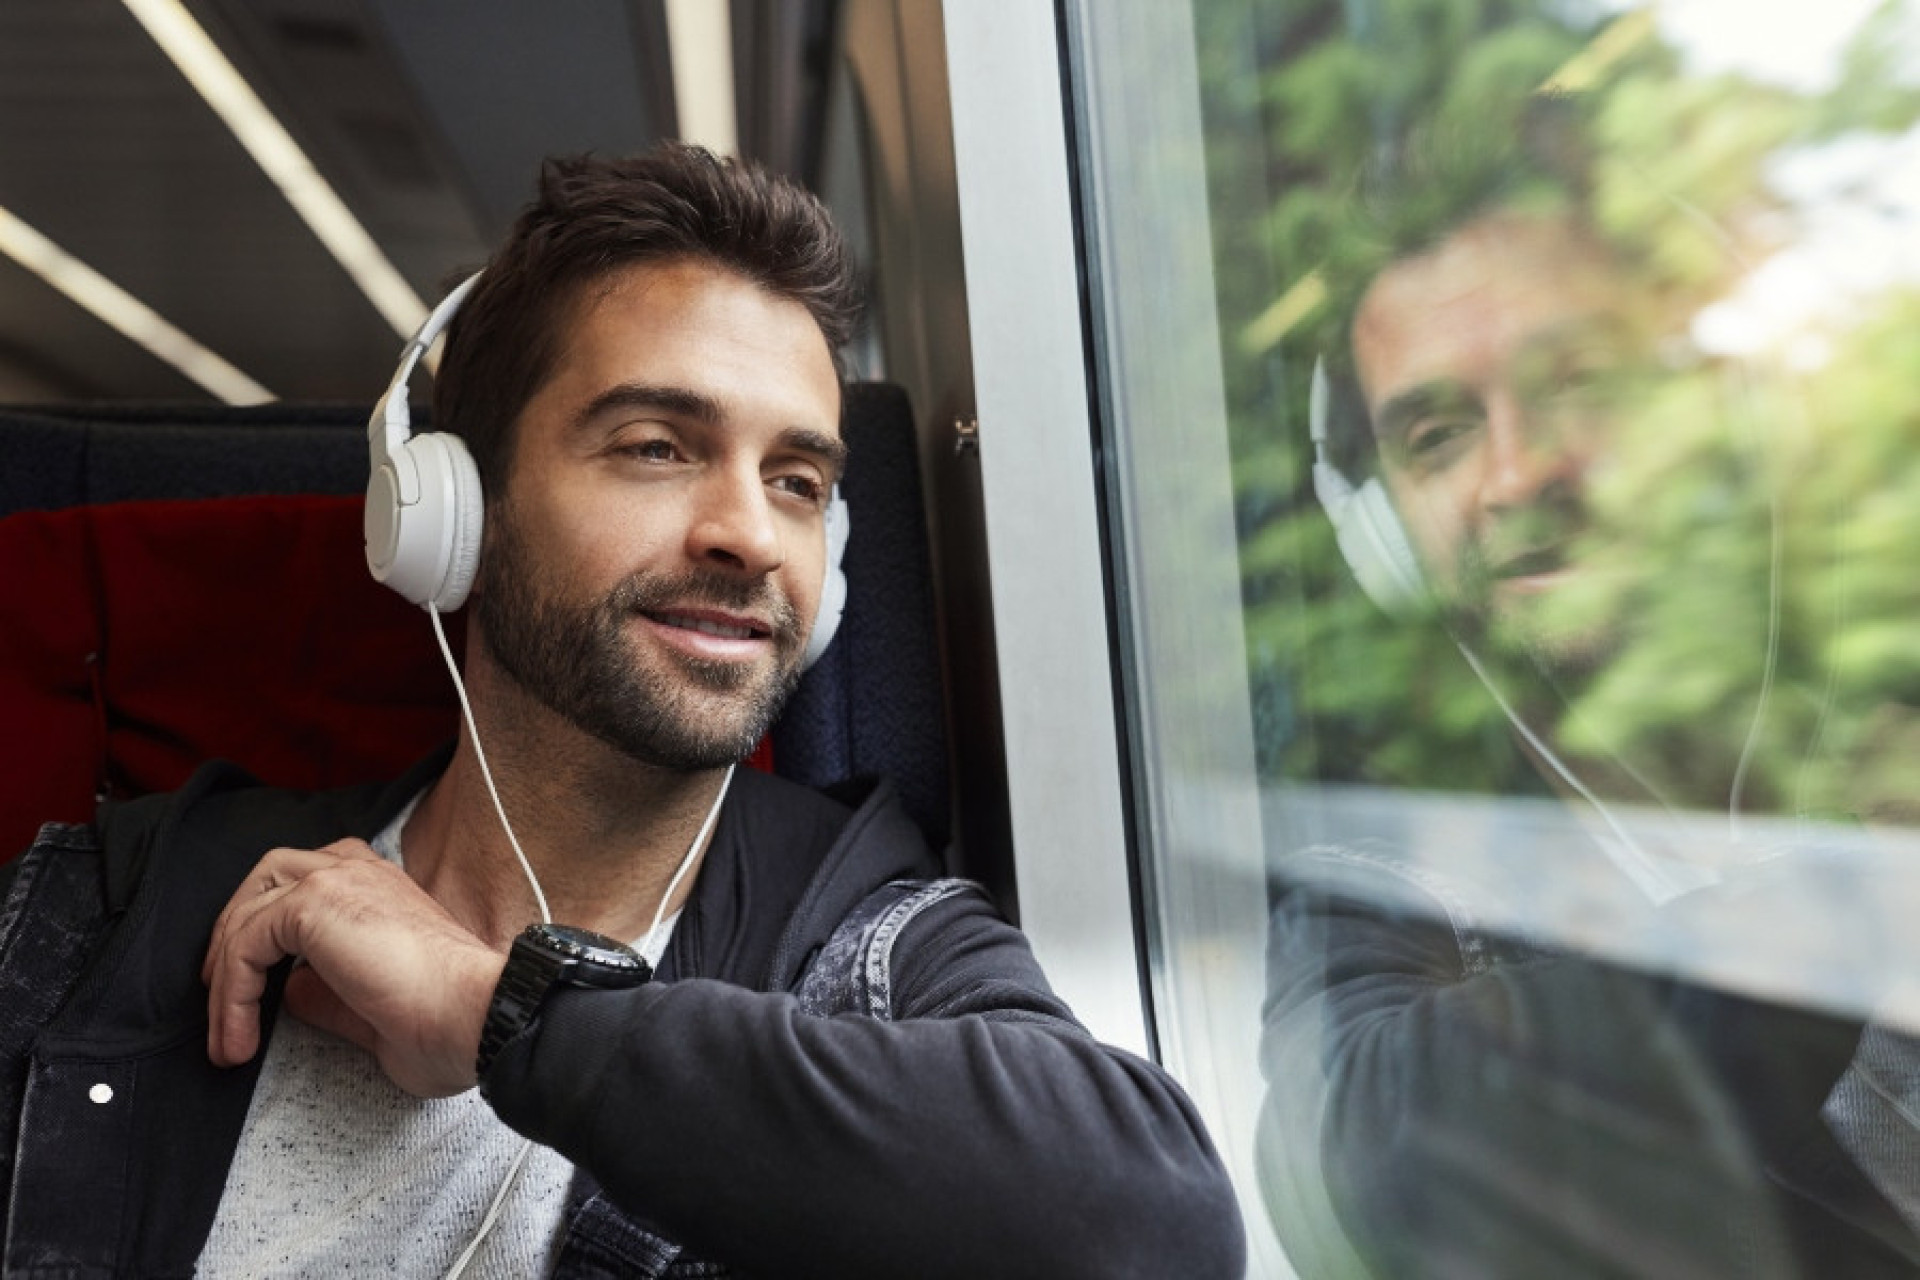 El suave ritmo de los trenes complementa su experiencia musical, creando un fondo armonioso para la escucha.